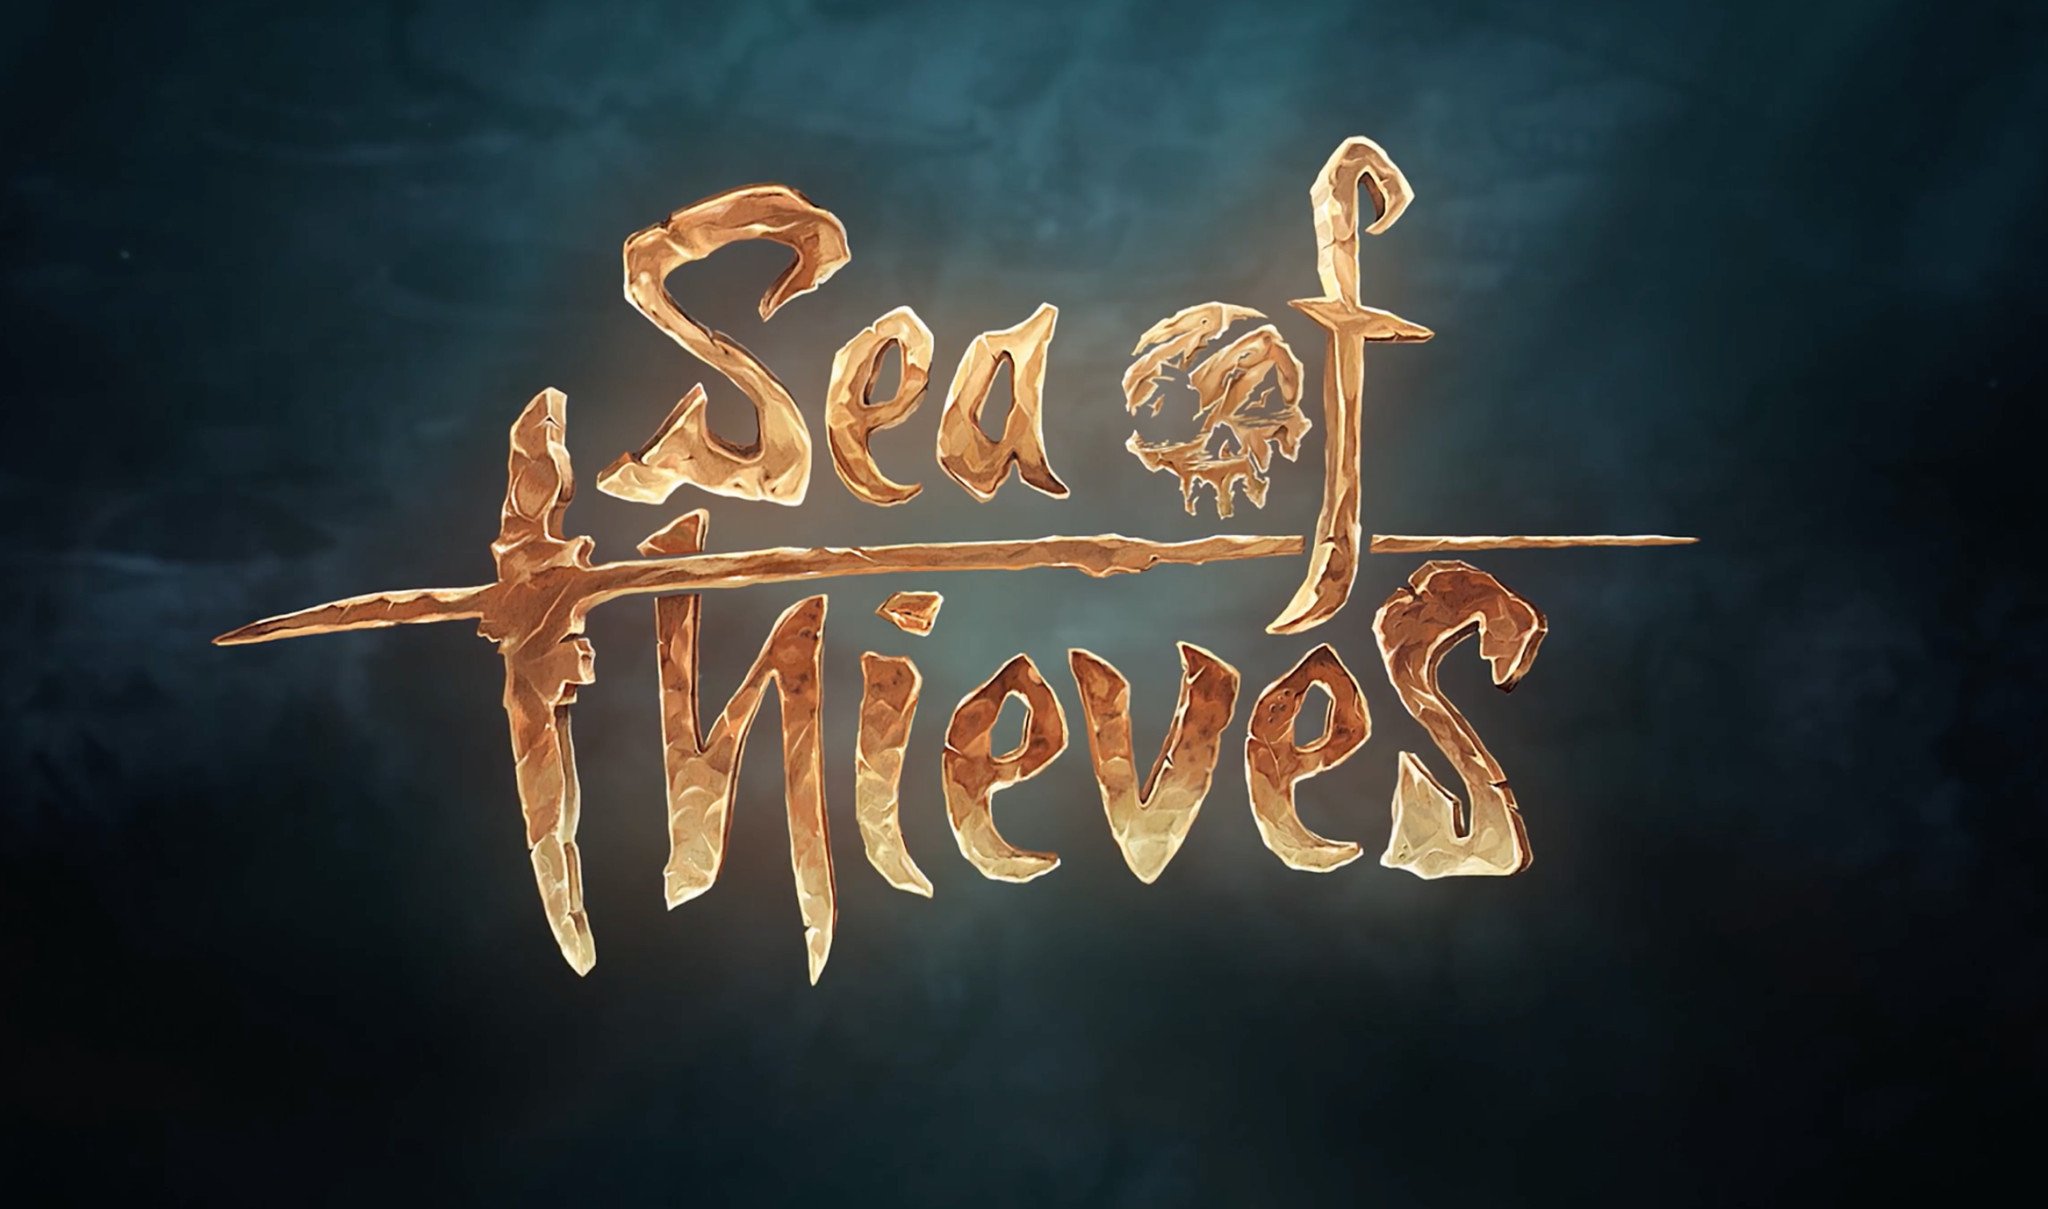 sea-of-thieves-logo.jpg